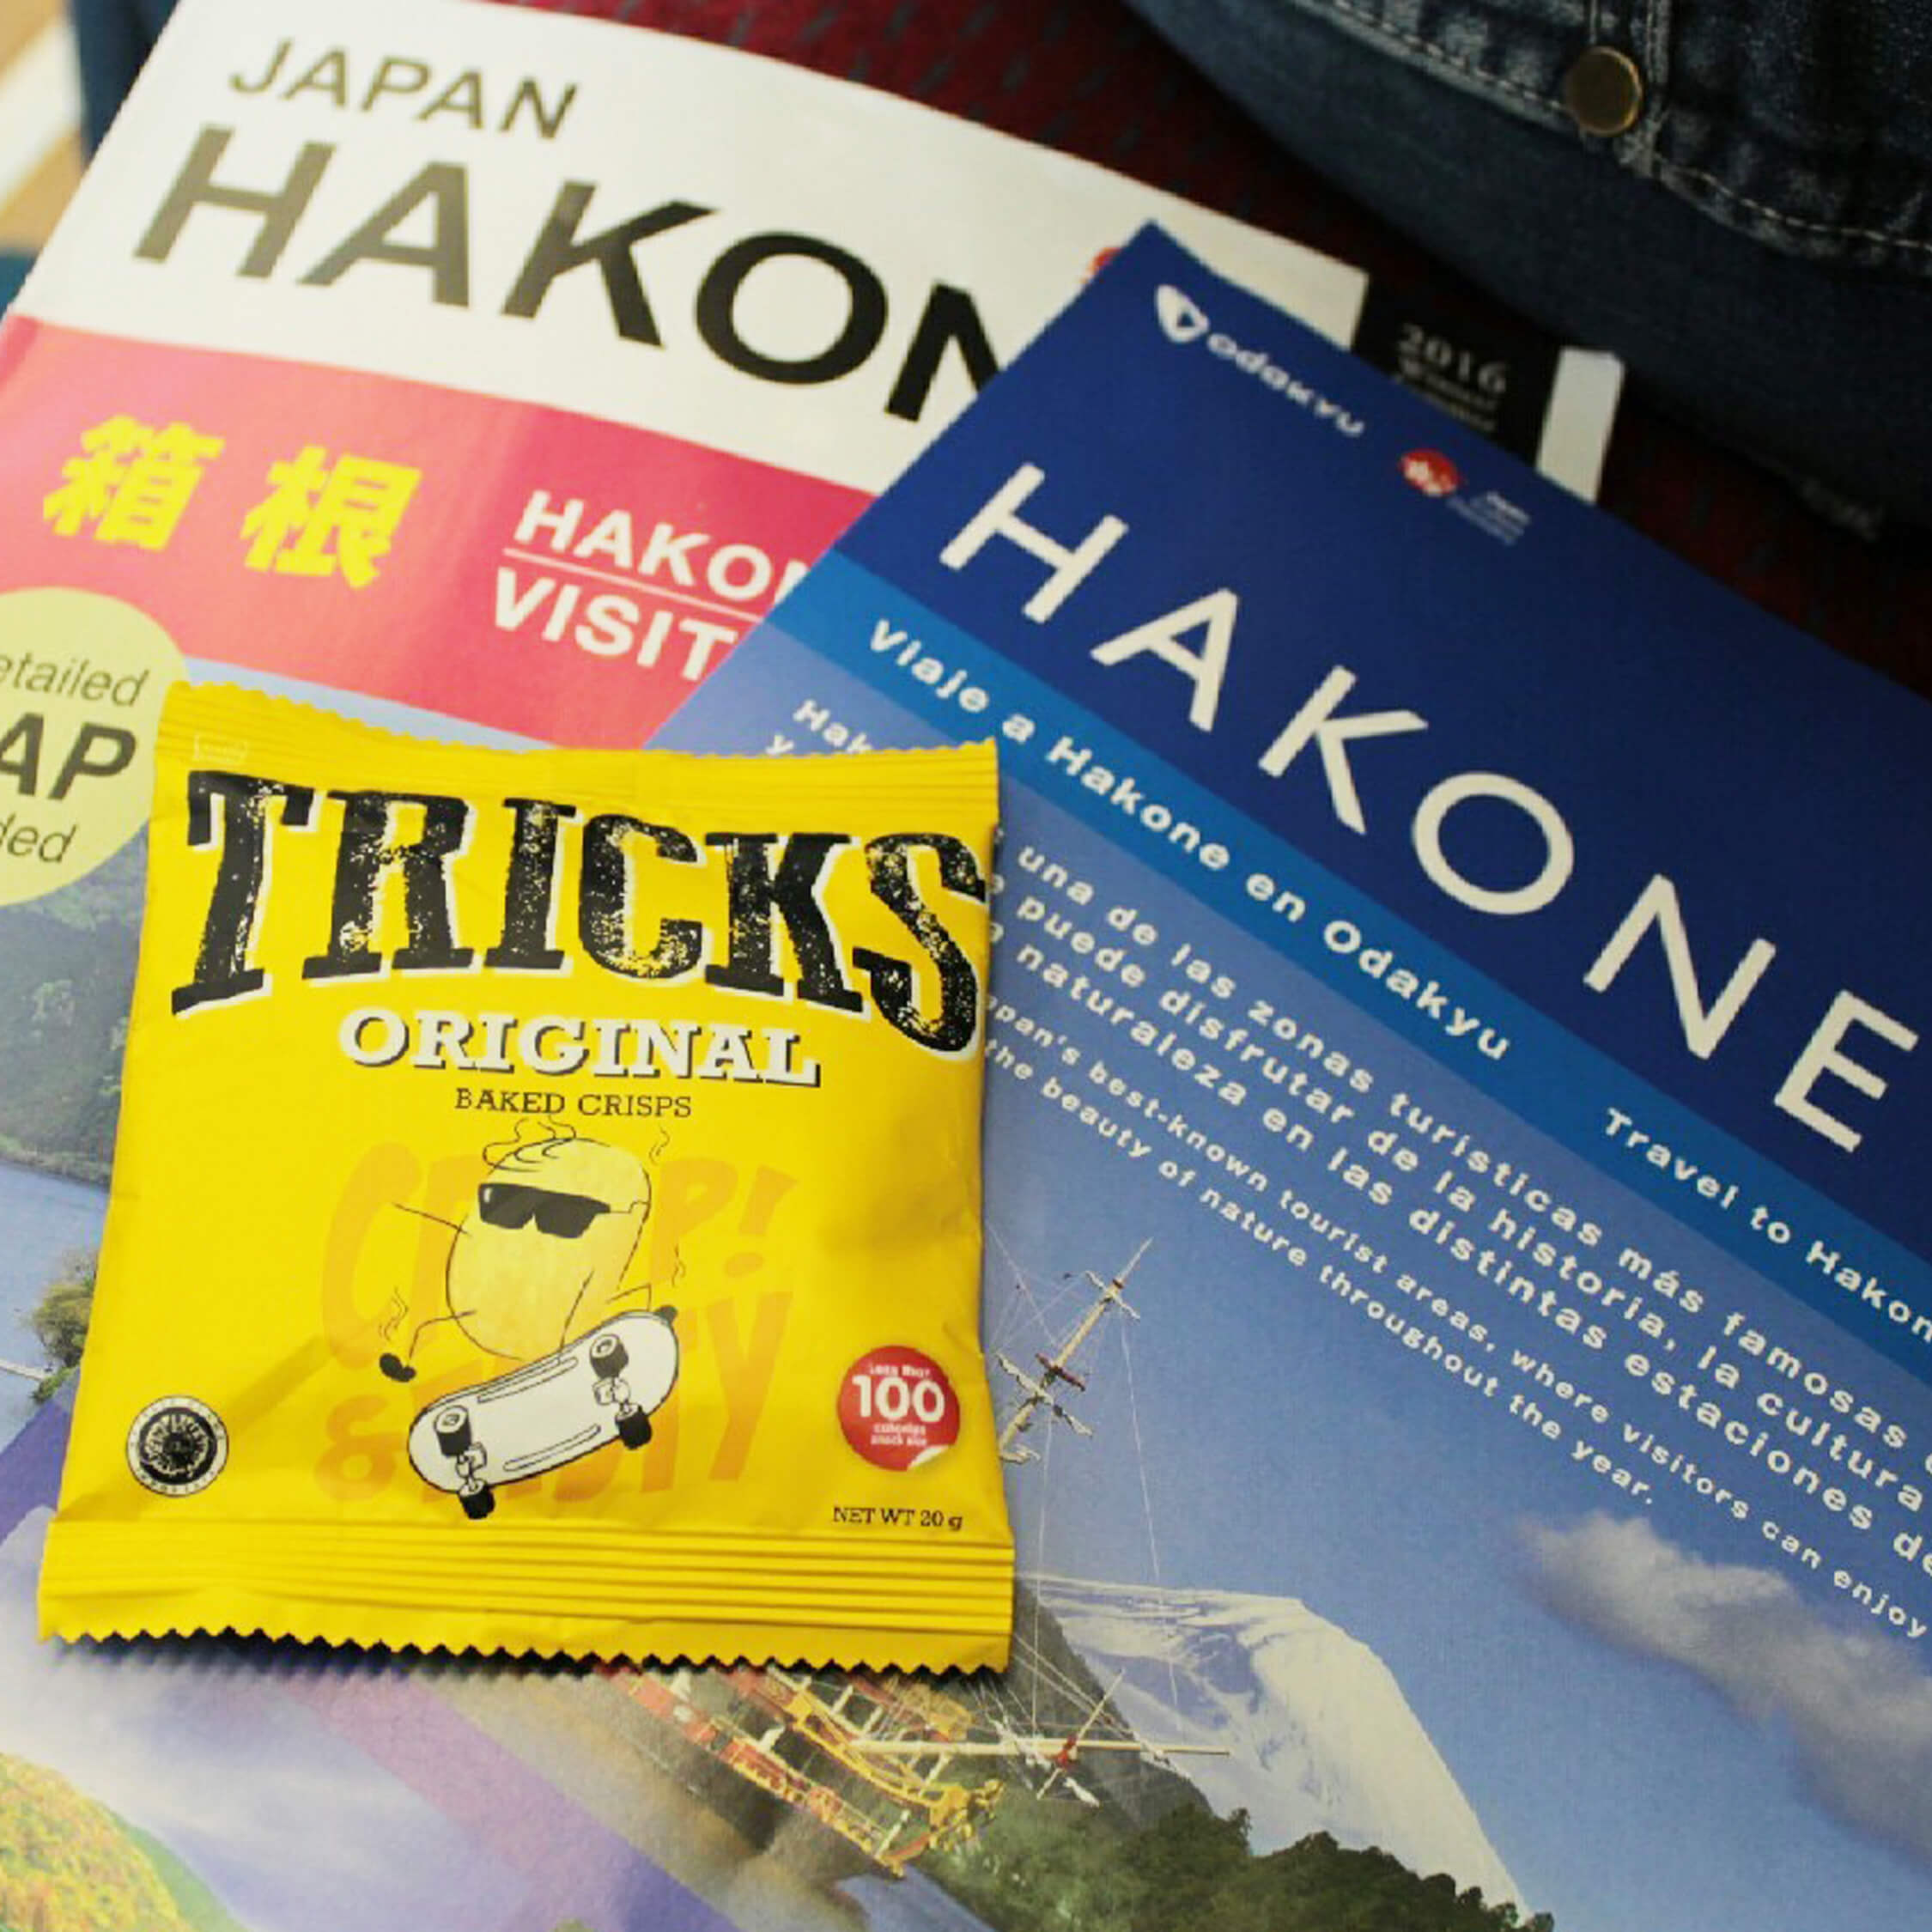 Hakone Guide Book